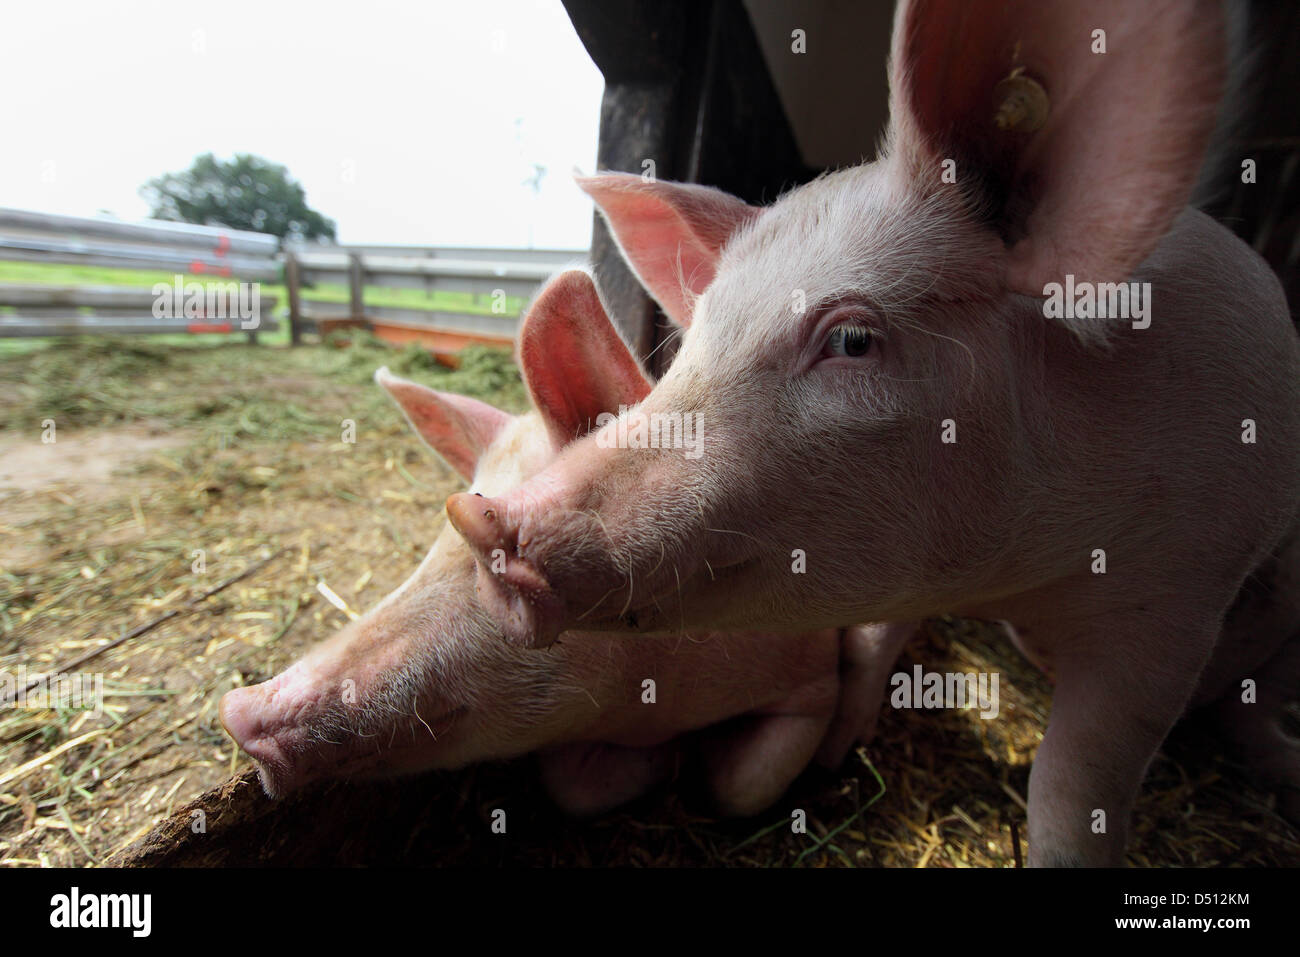 Strahlende Dorf, Deutschland, Biofleischproduktion, Ferkel Blick ihren Stall heraus ins freie Stockfoto